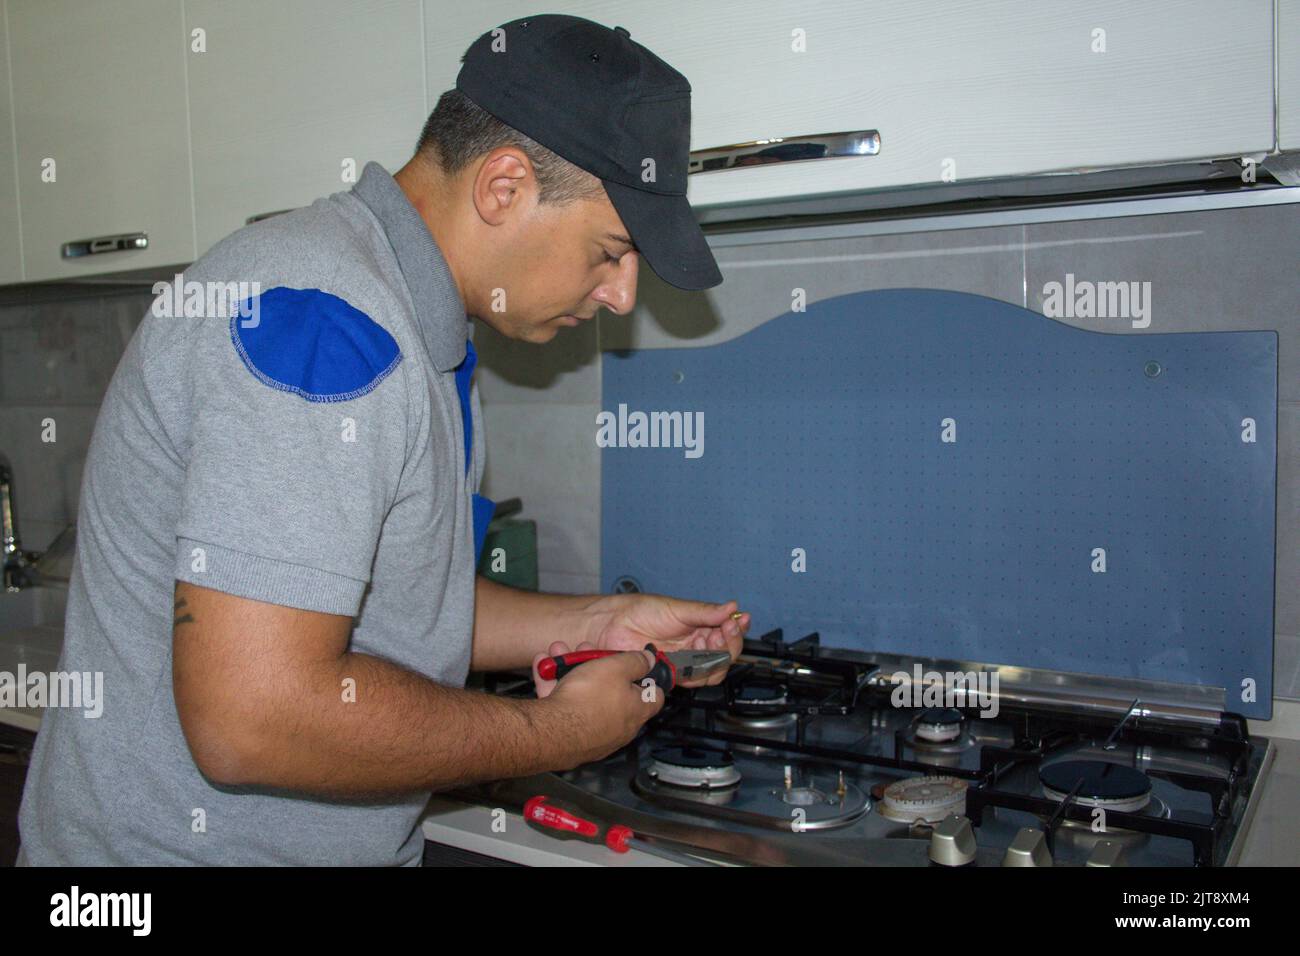 Image d'un homme de main qui répare la plaque de cuisson dans une cuisine maison. Problème avec les cuisinières à gaz Banque D'Images